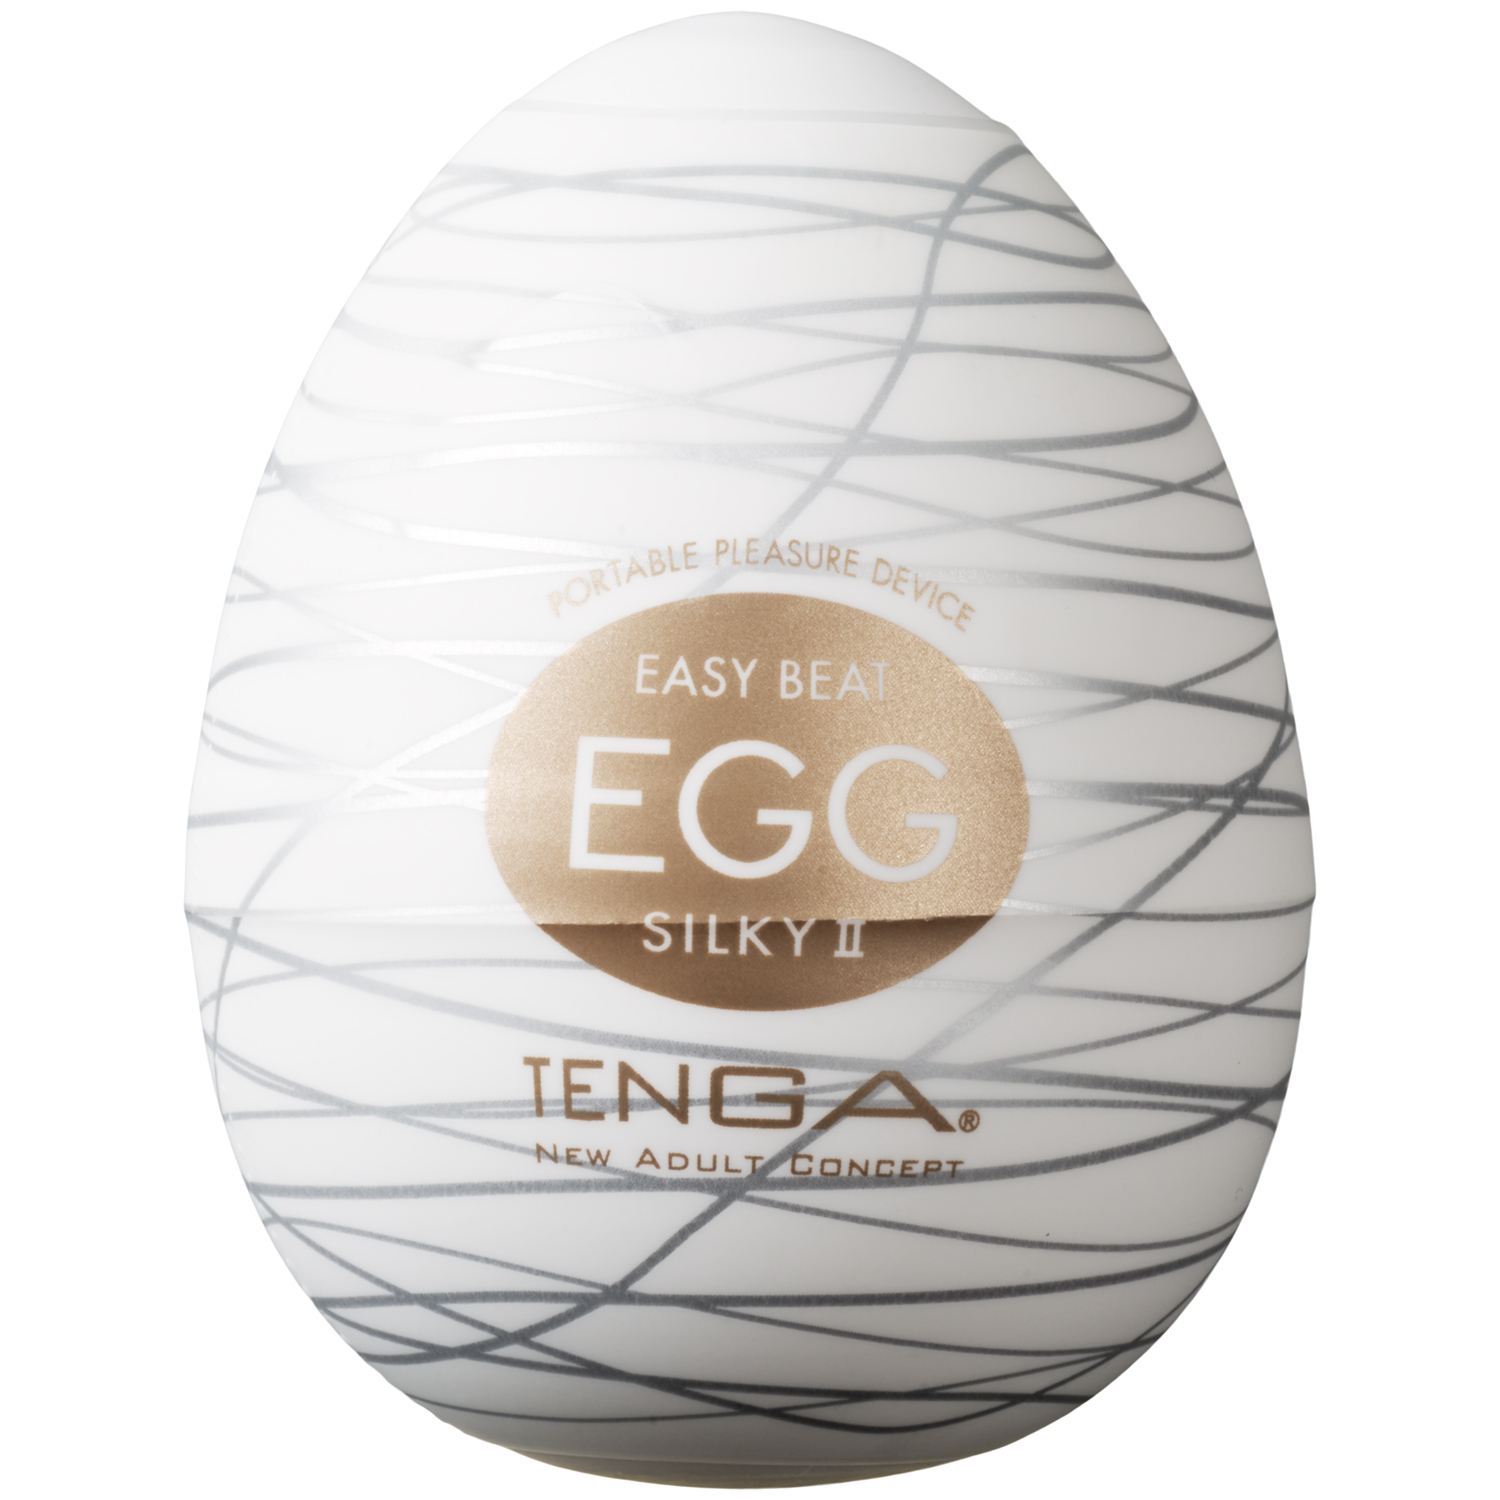 TENGA Egg Silky ll Masturbator - Vit | Män//Onaniprodukter//TENGA//Handjob Stroker//TENGA Egg//Priser från 49 kr | Intimast